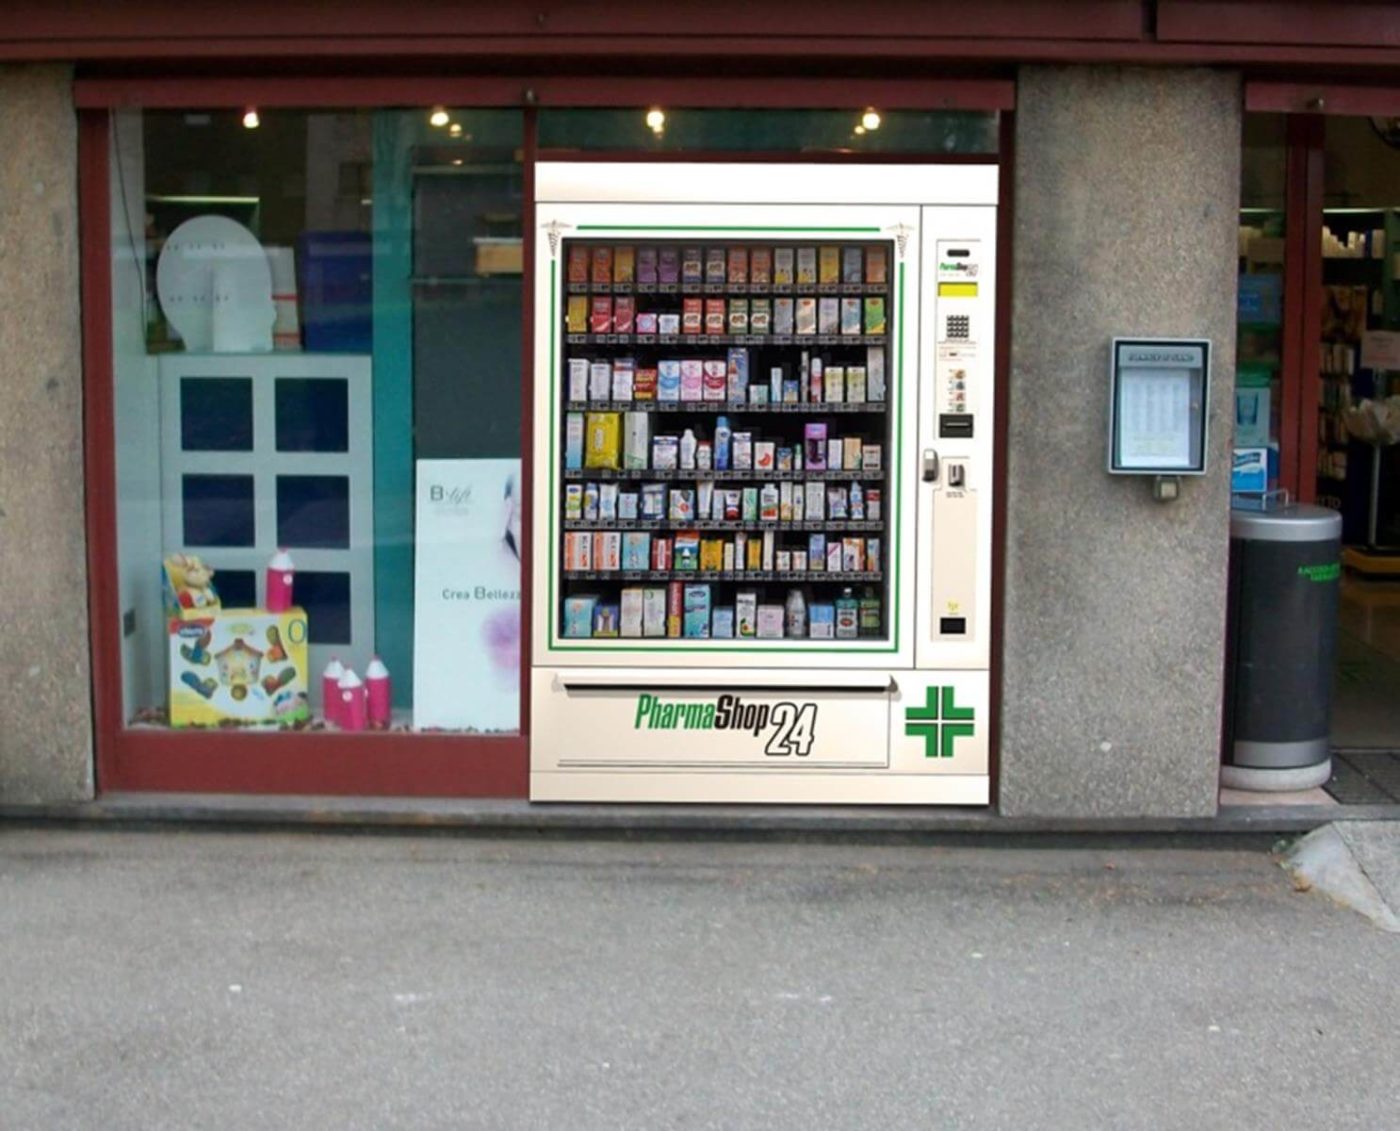 Automaty vendingowe z farmaceutycznym asortymentem to pomysł na biznes pod marką Pharmashop24. Jak na tym zarabiać?